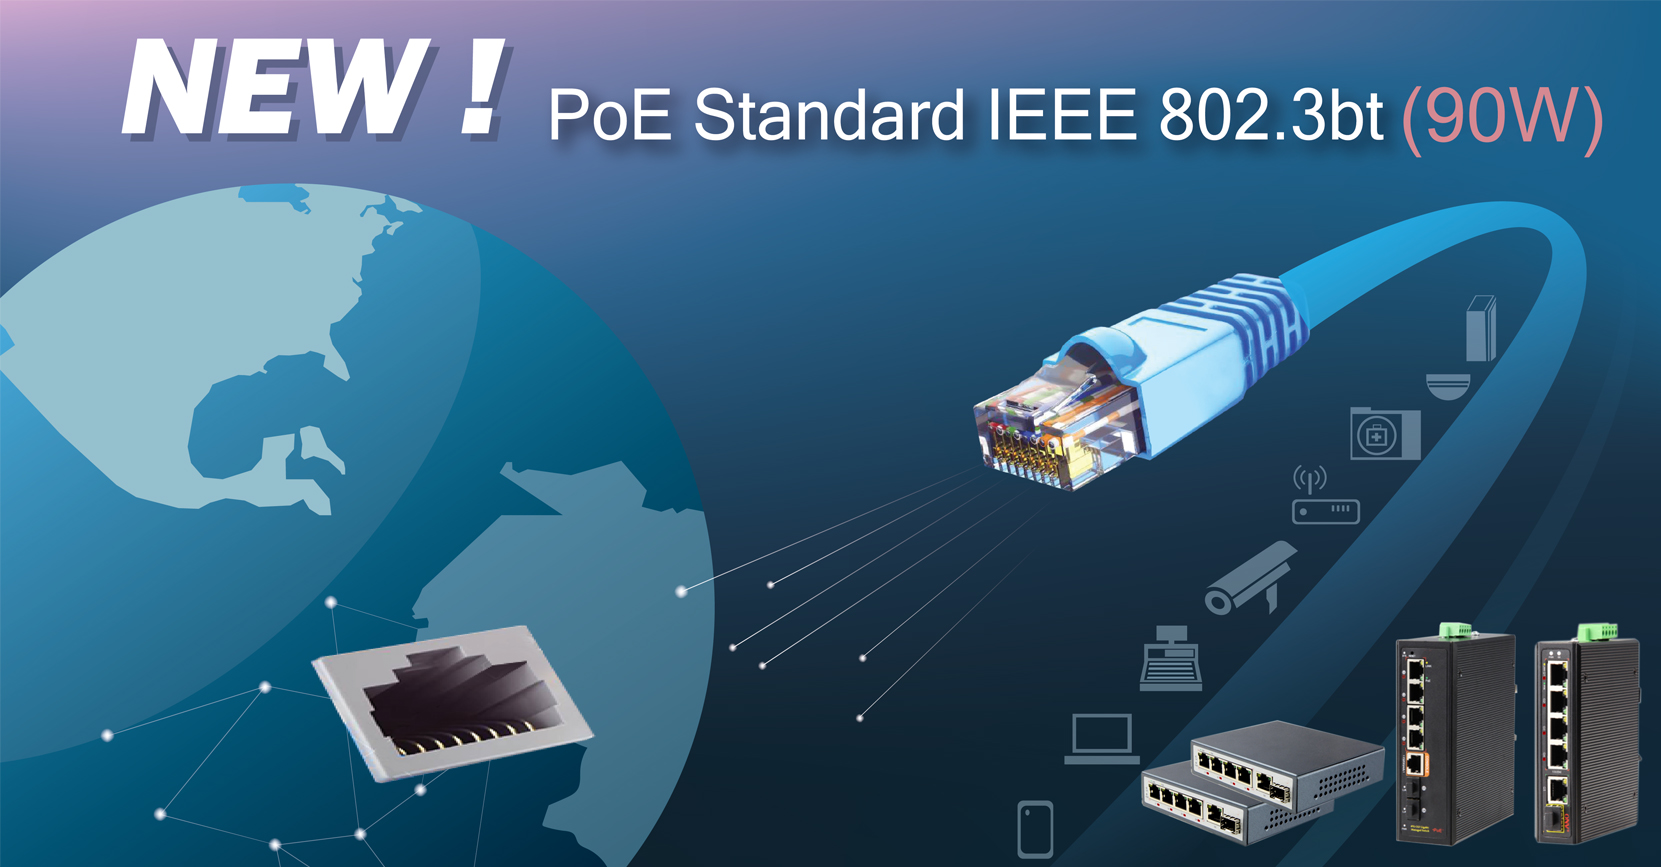 New! PoE Standard IEEE802.3bt (90W)